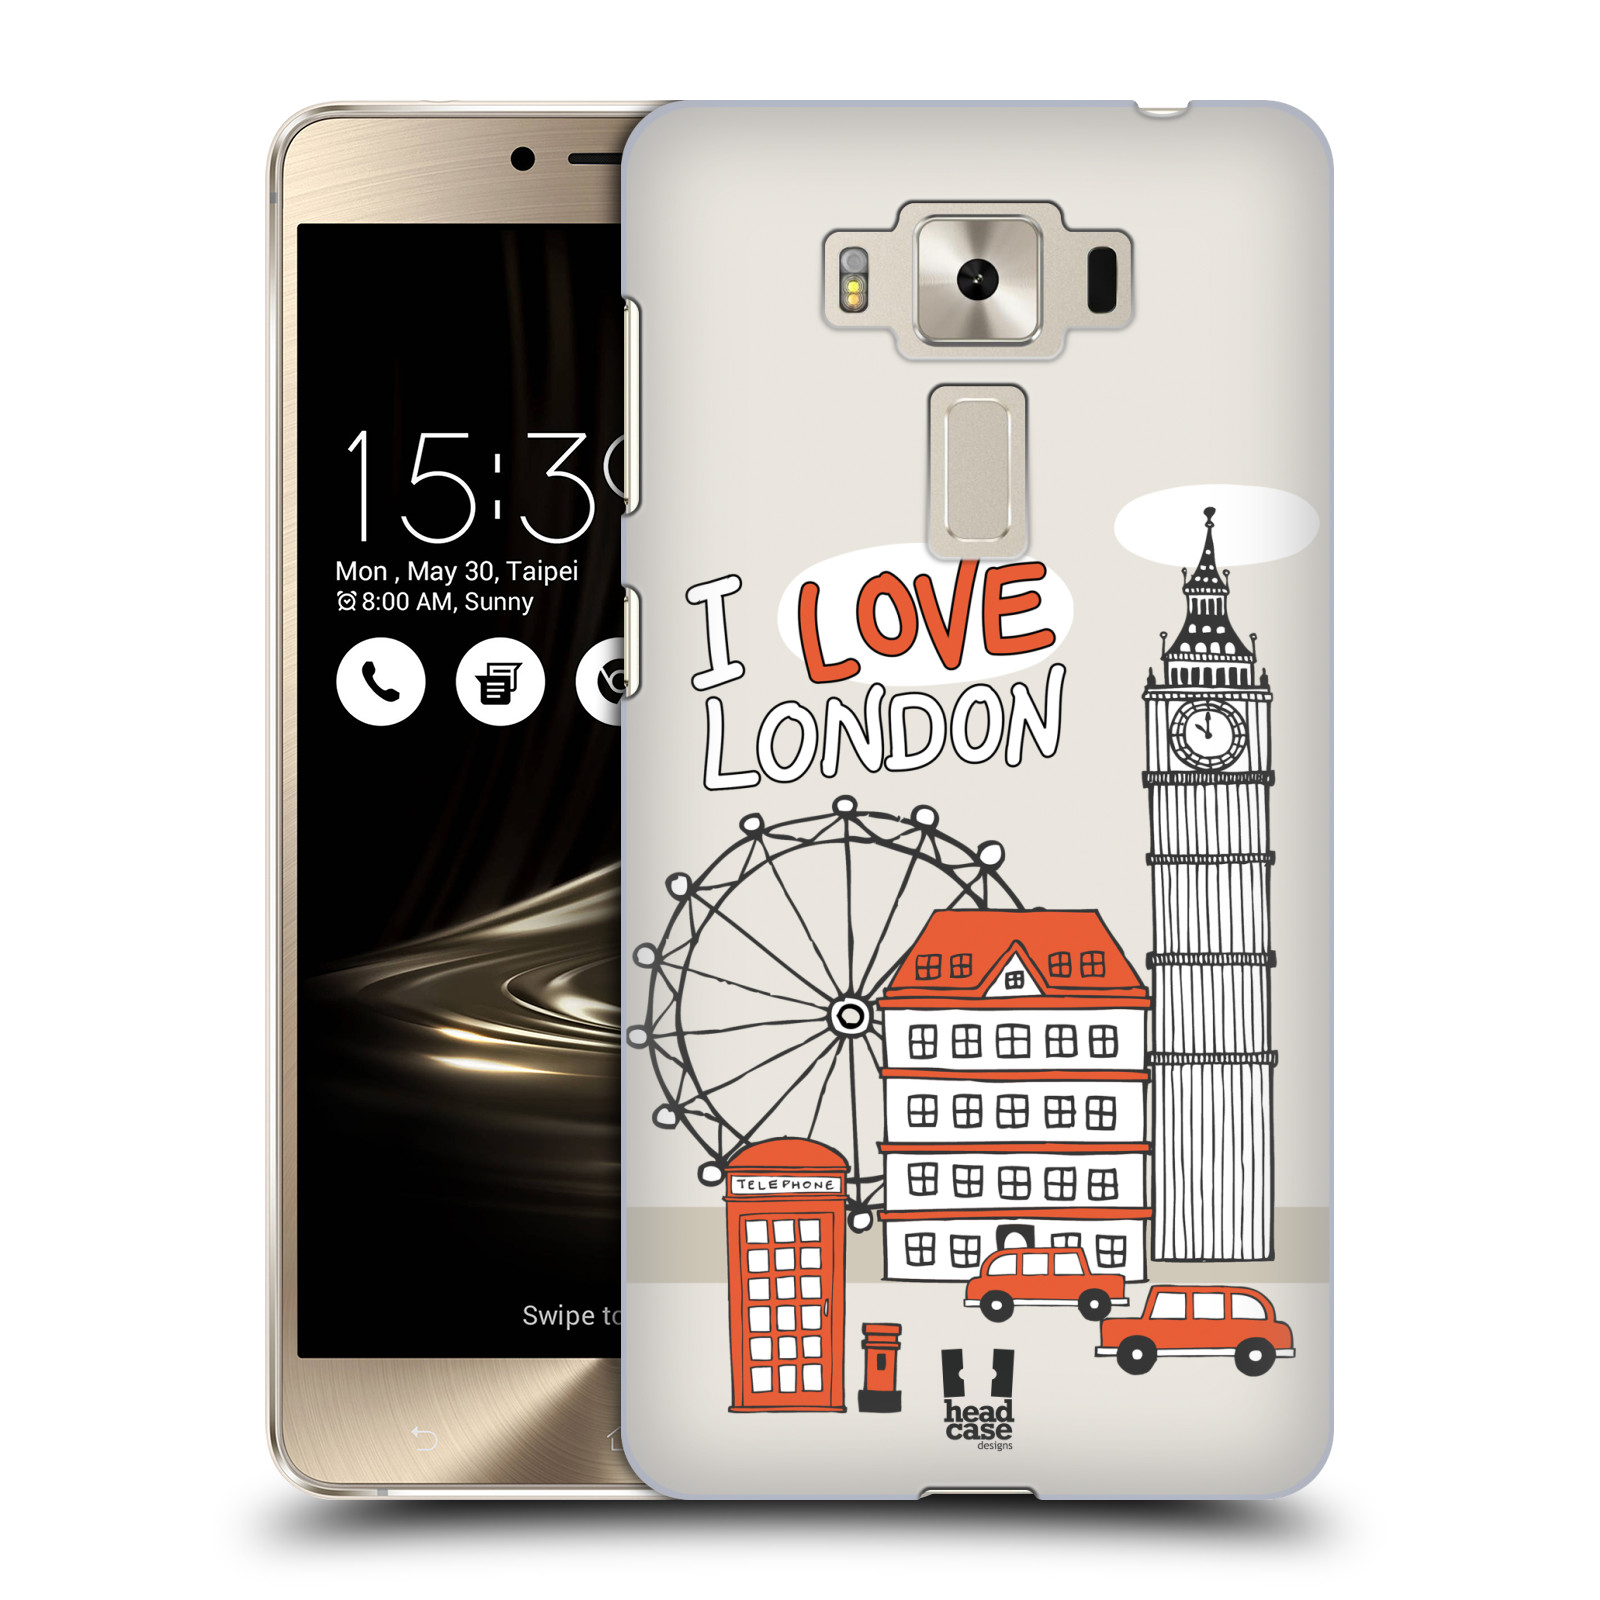 HEAD CASE plastový obal na mobil Asus Zenfone 3 DELUXE ZS550KL vzor Kreslená městečka ČERVENÁ, Anglie, Londýn, I LOVE LONDON